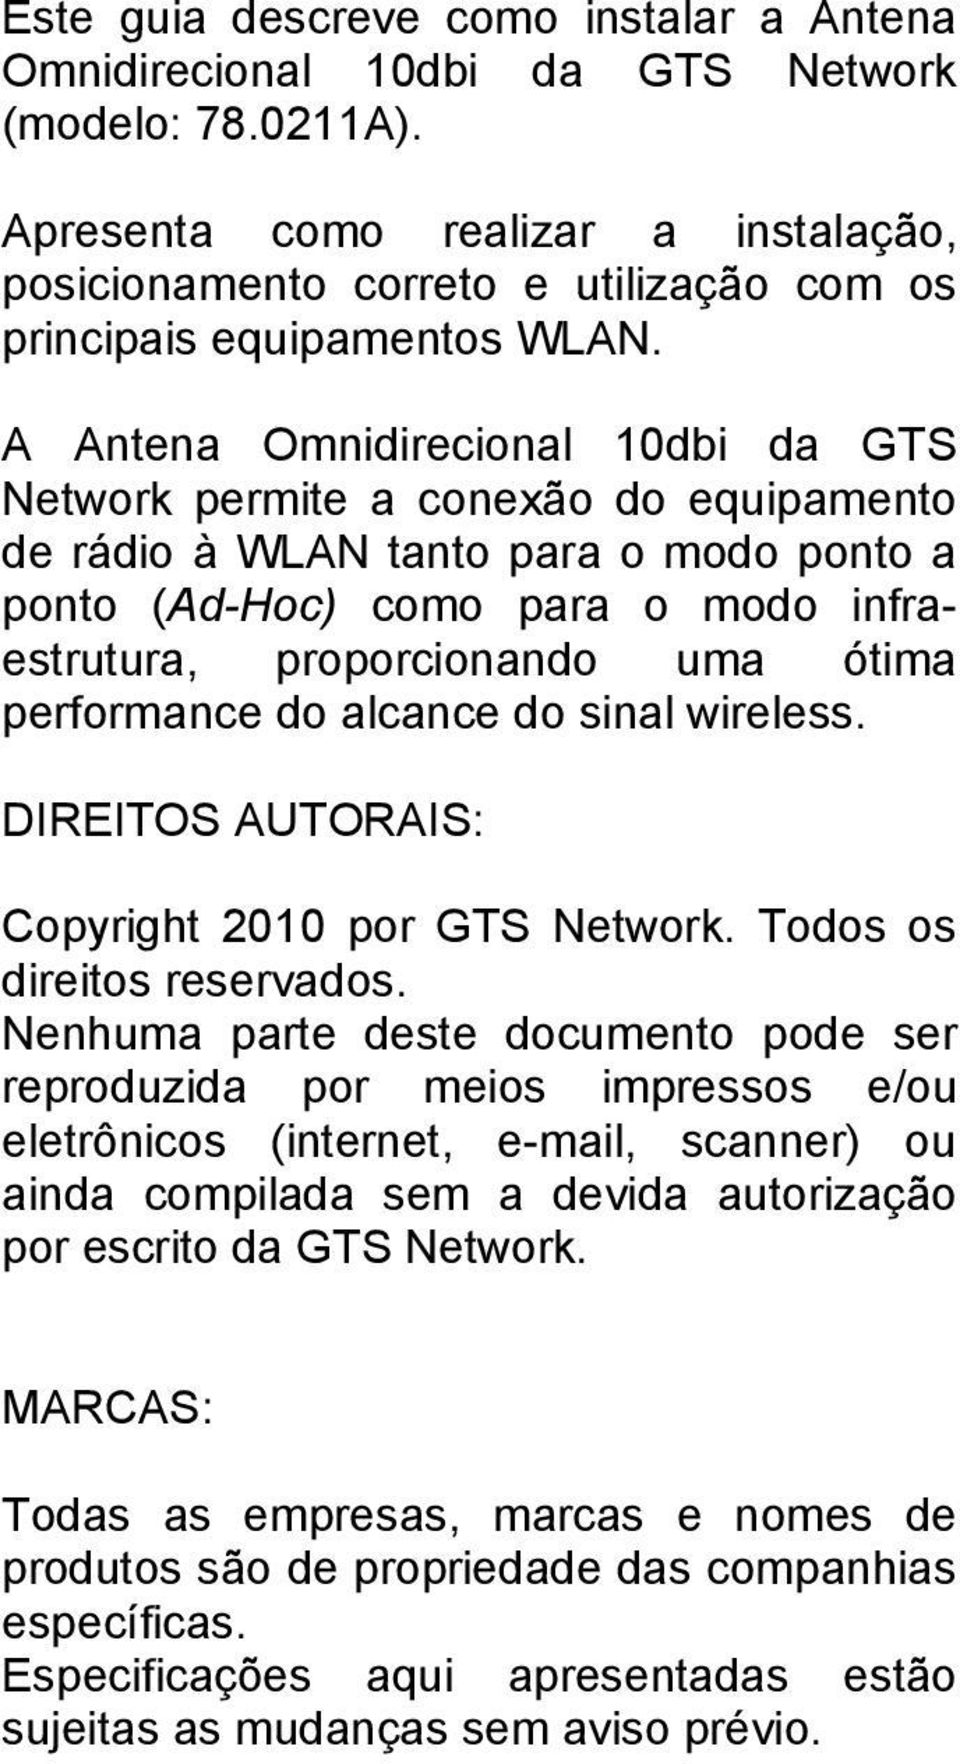 A Antena Omnidirecional 10dbi da GTS Network permite a conexão do equipamento de rádio à WLAN tanto para o modo ponto a ponto (Ad-Hoc) como para o modo infraestrutura, proporcionando uma ótima